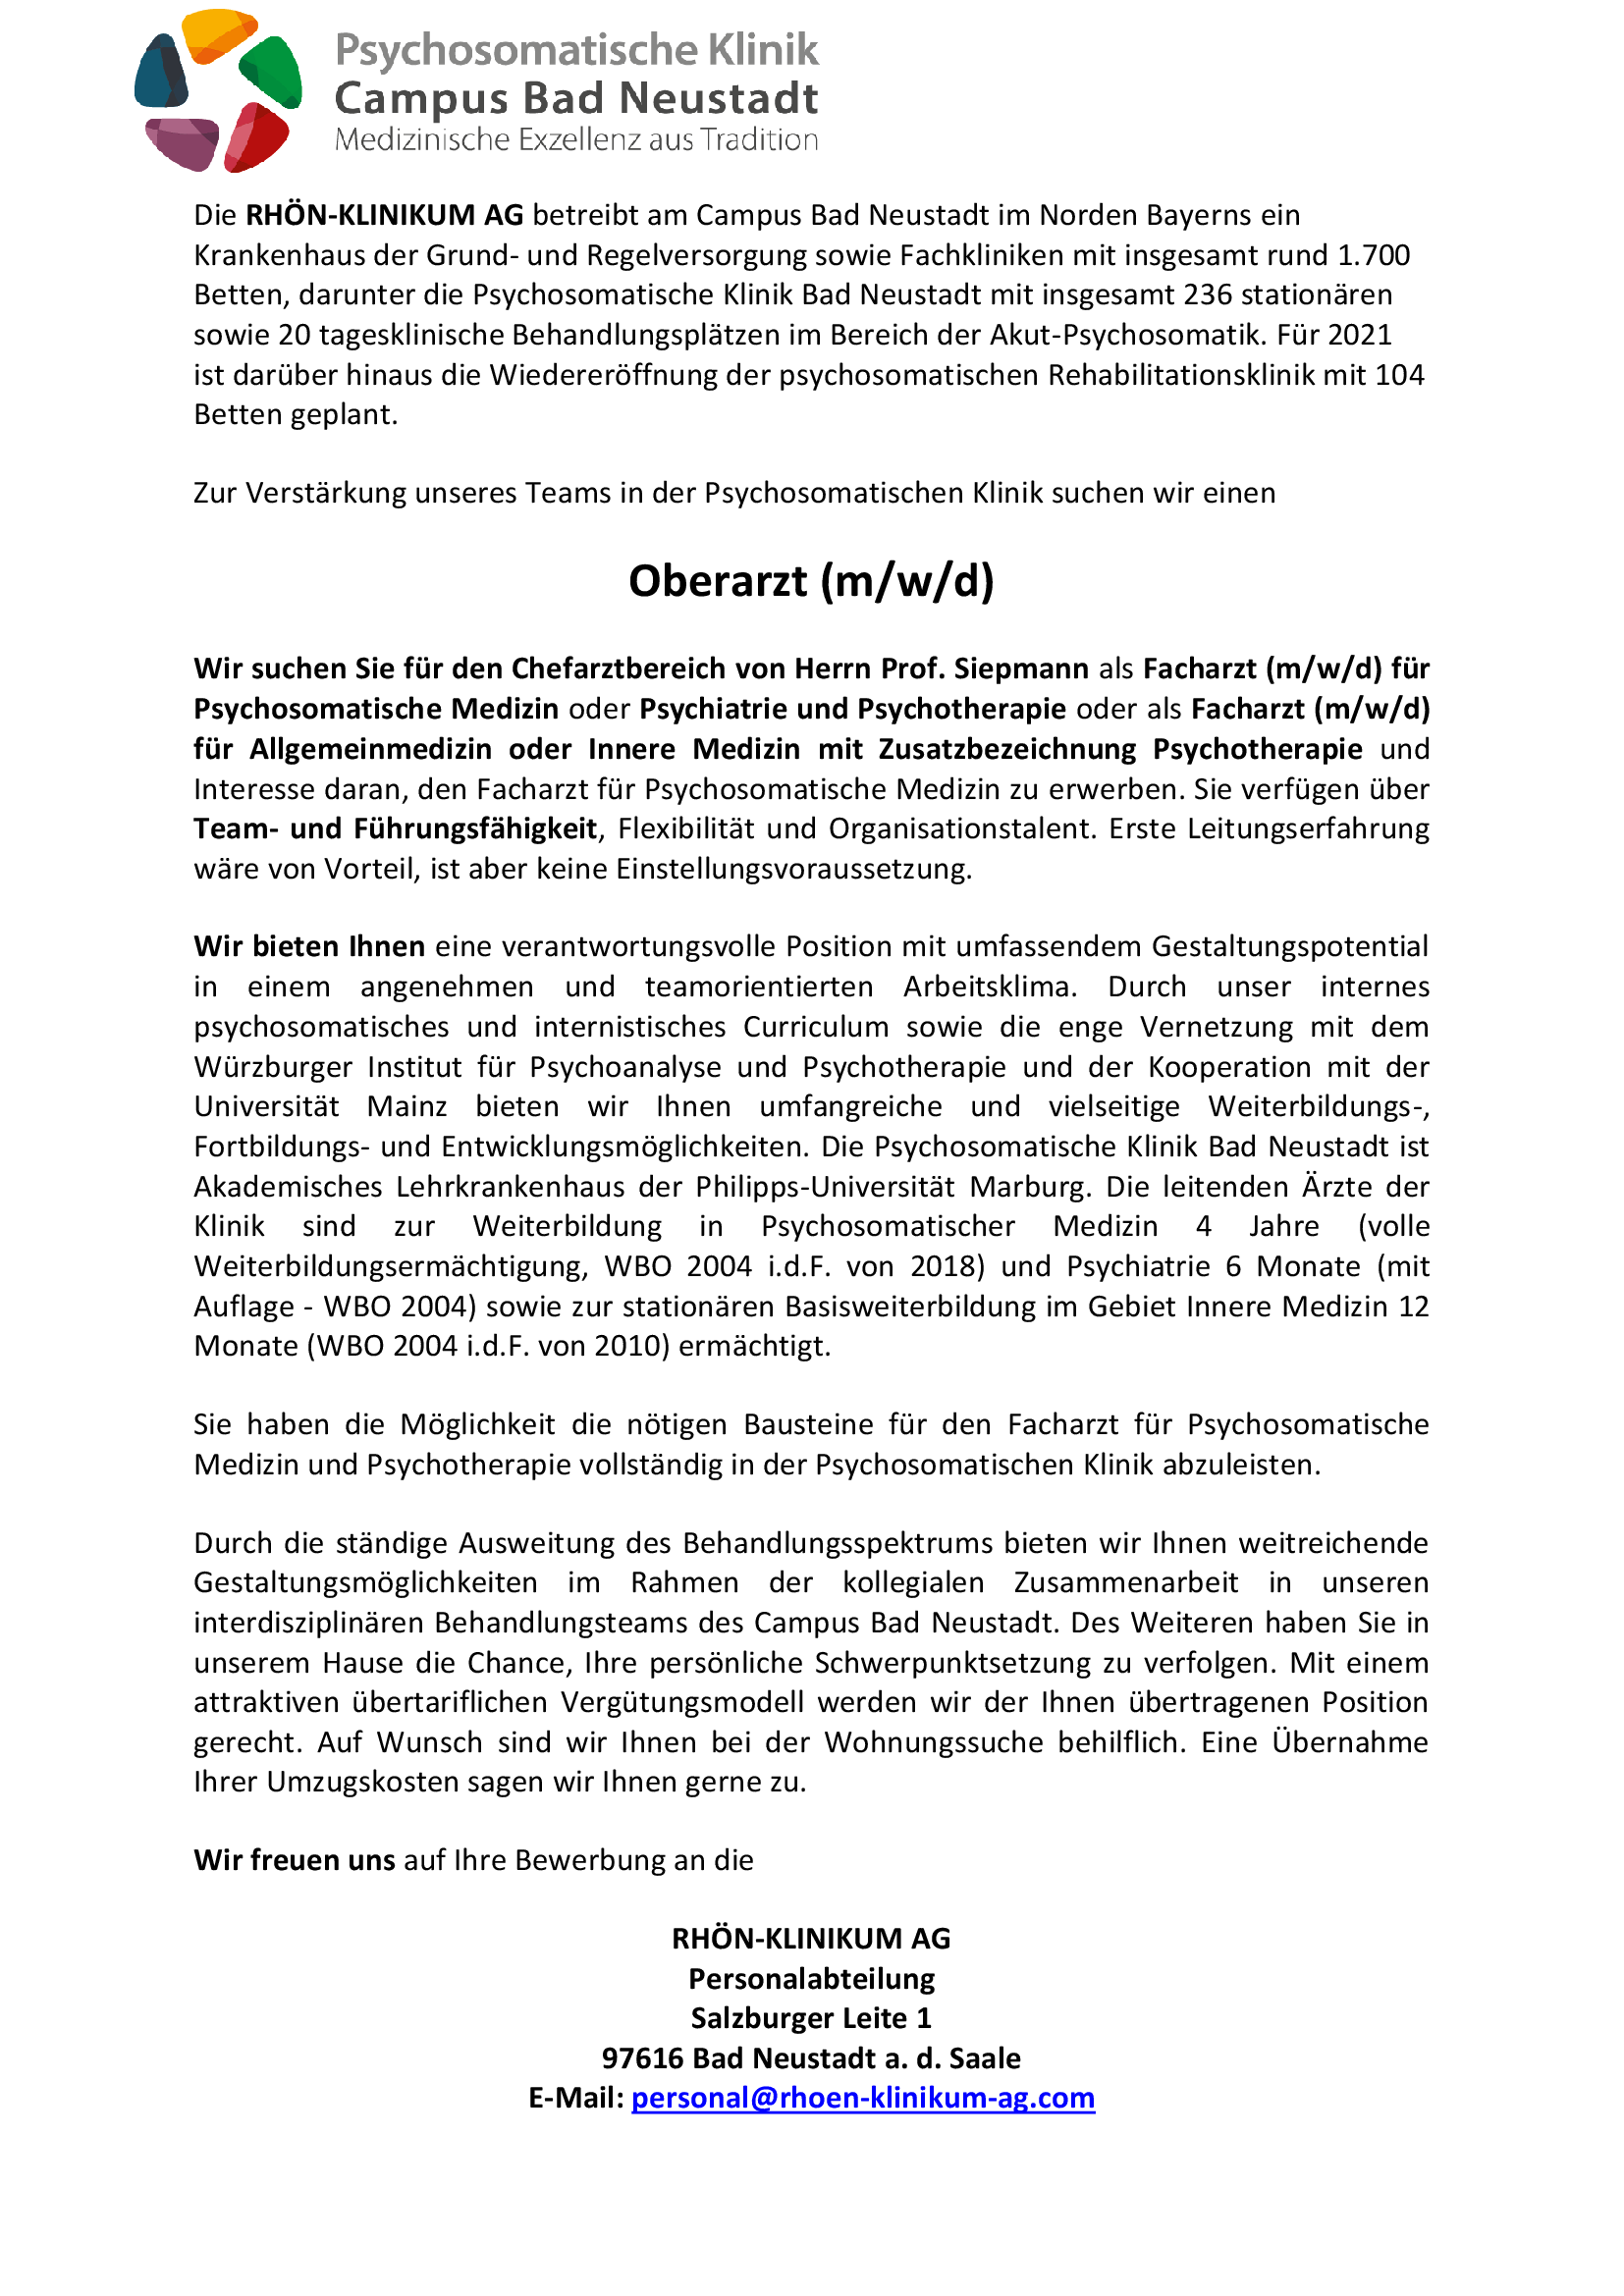 Psychosomatische Klinik Bad Neustadt Oberarzt 6 2021